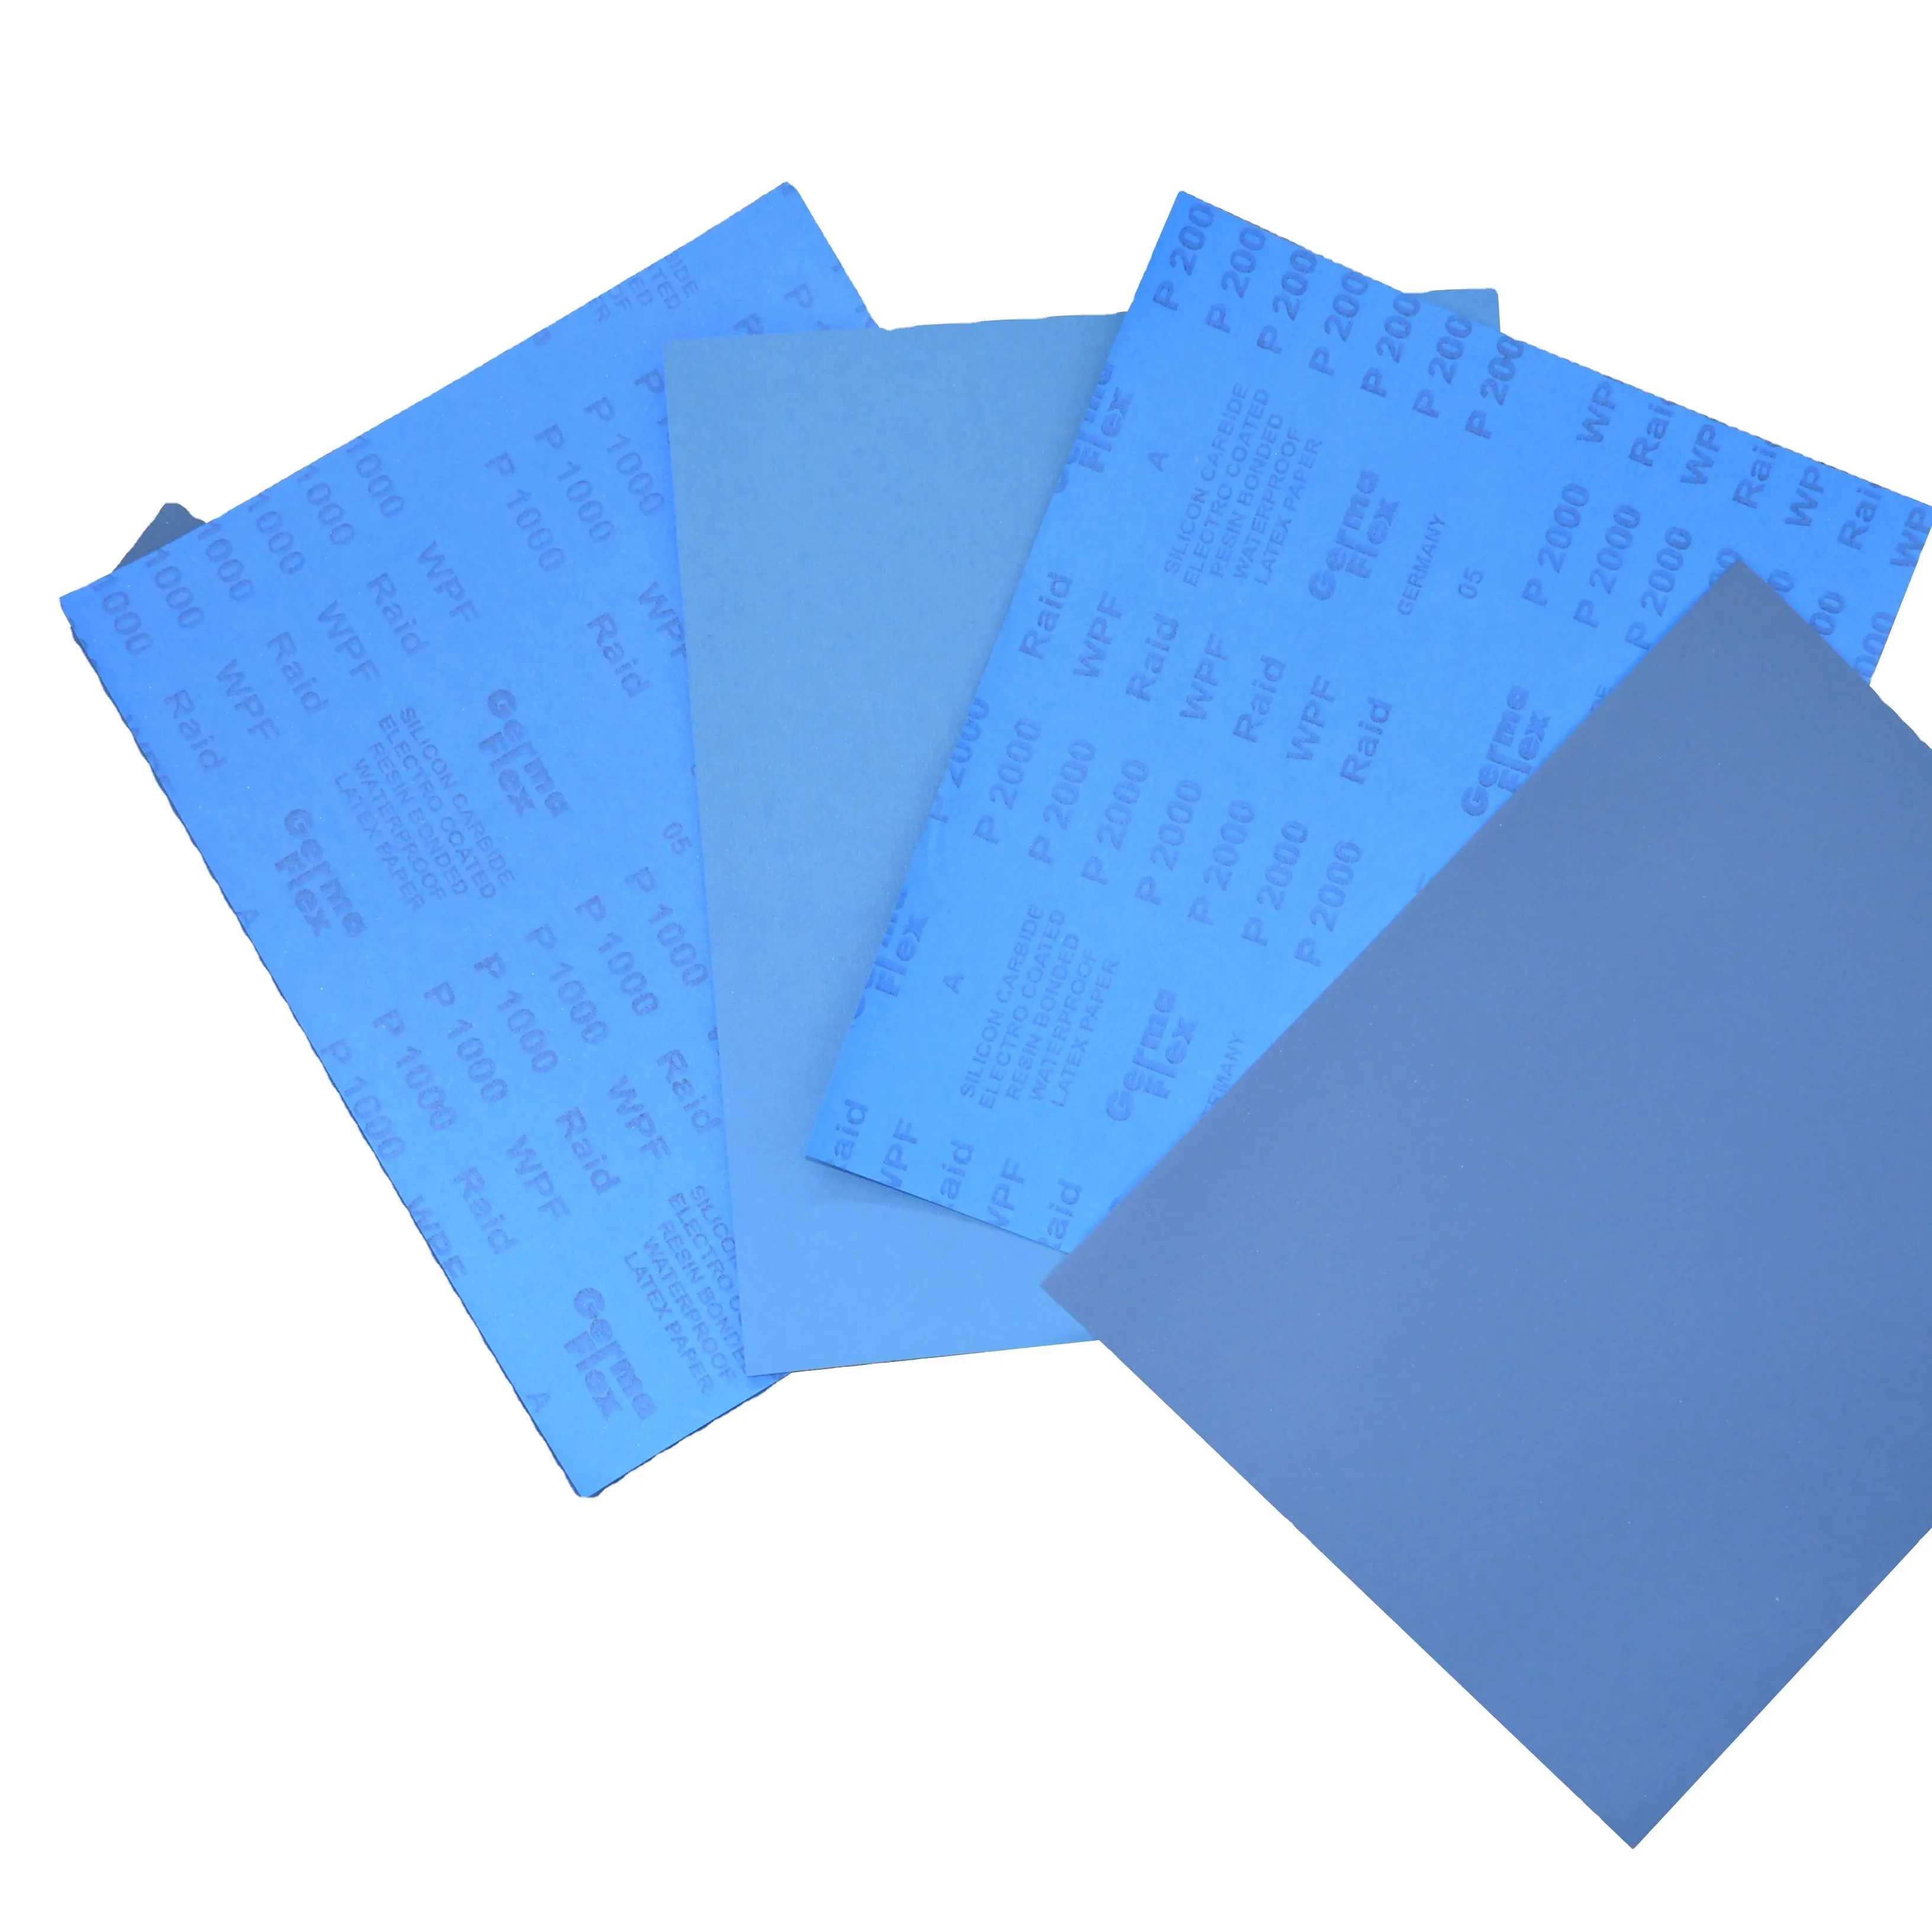 30% темно-синяя импортная латексная бумага водонепроницаемая супер тонкая шлифовка Автомобильная полировка